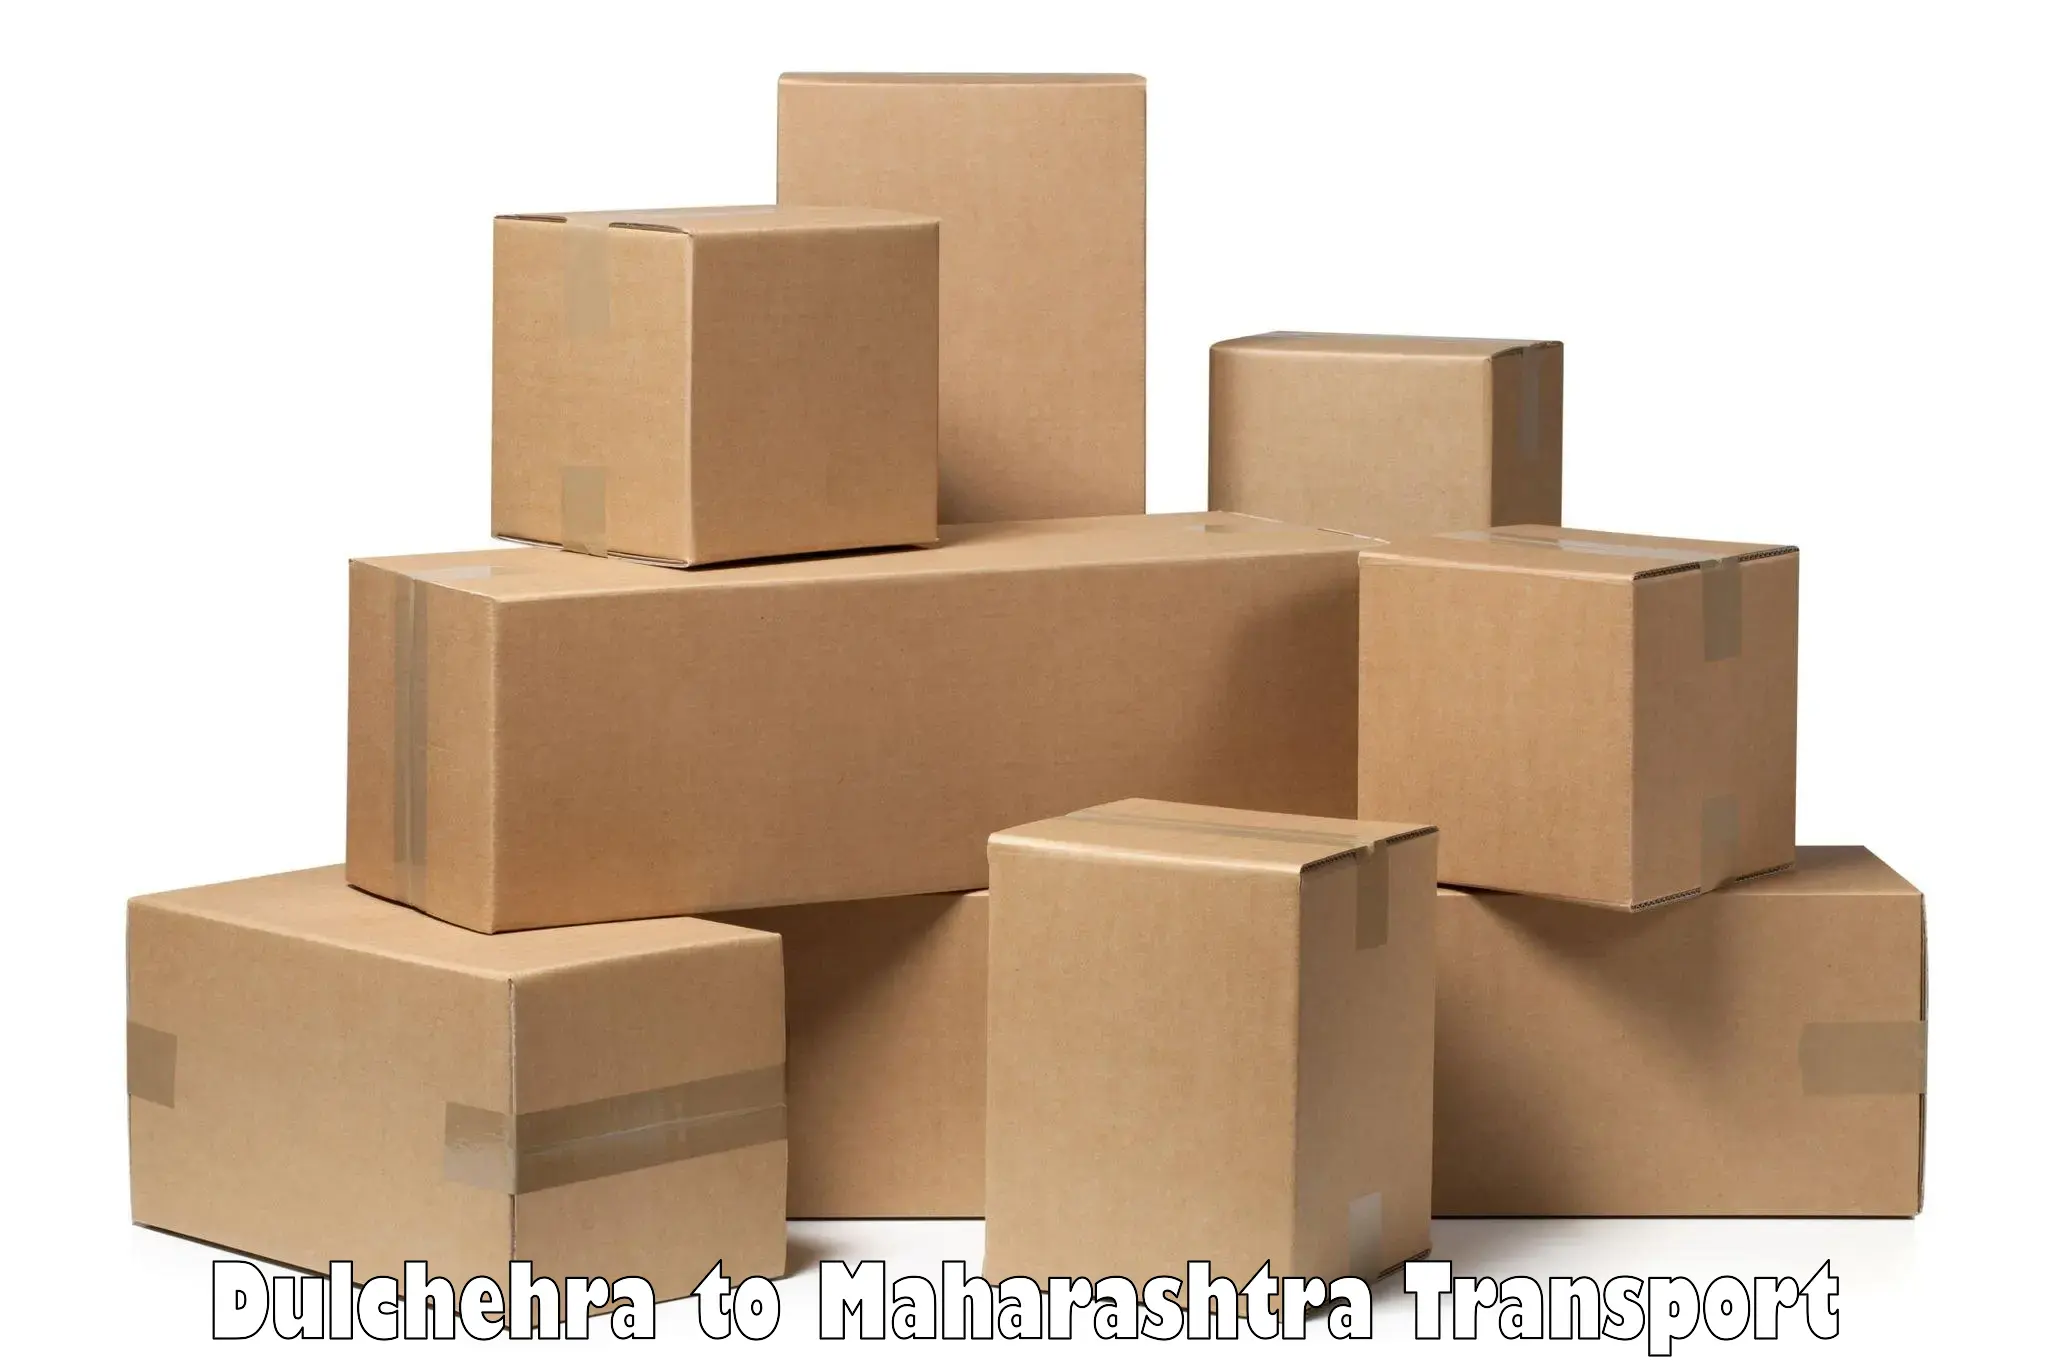 Furniture transport service in Dulchehra to Georai